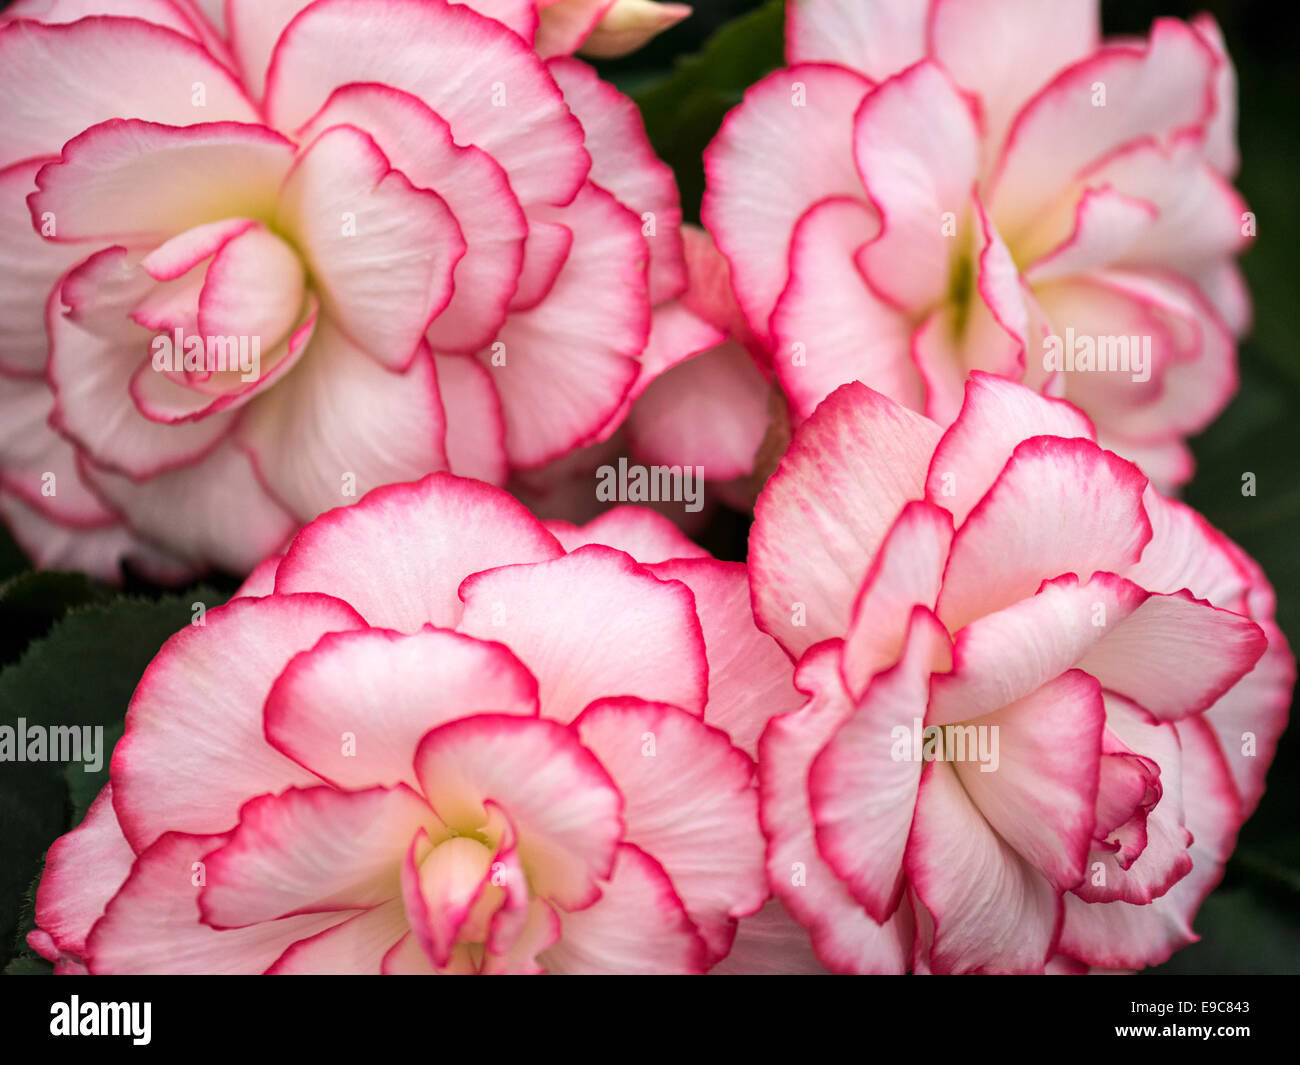 Begonie weiße Blüte mit roten / rosa Rand / Tipps und dunkelgrünem Laub. Stockfoto